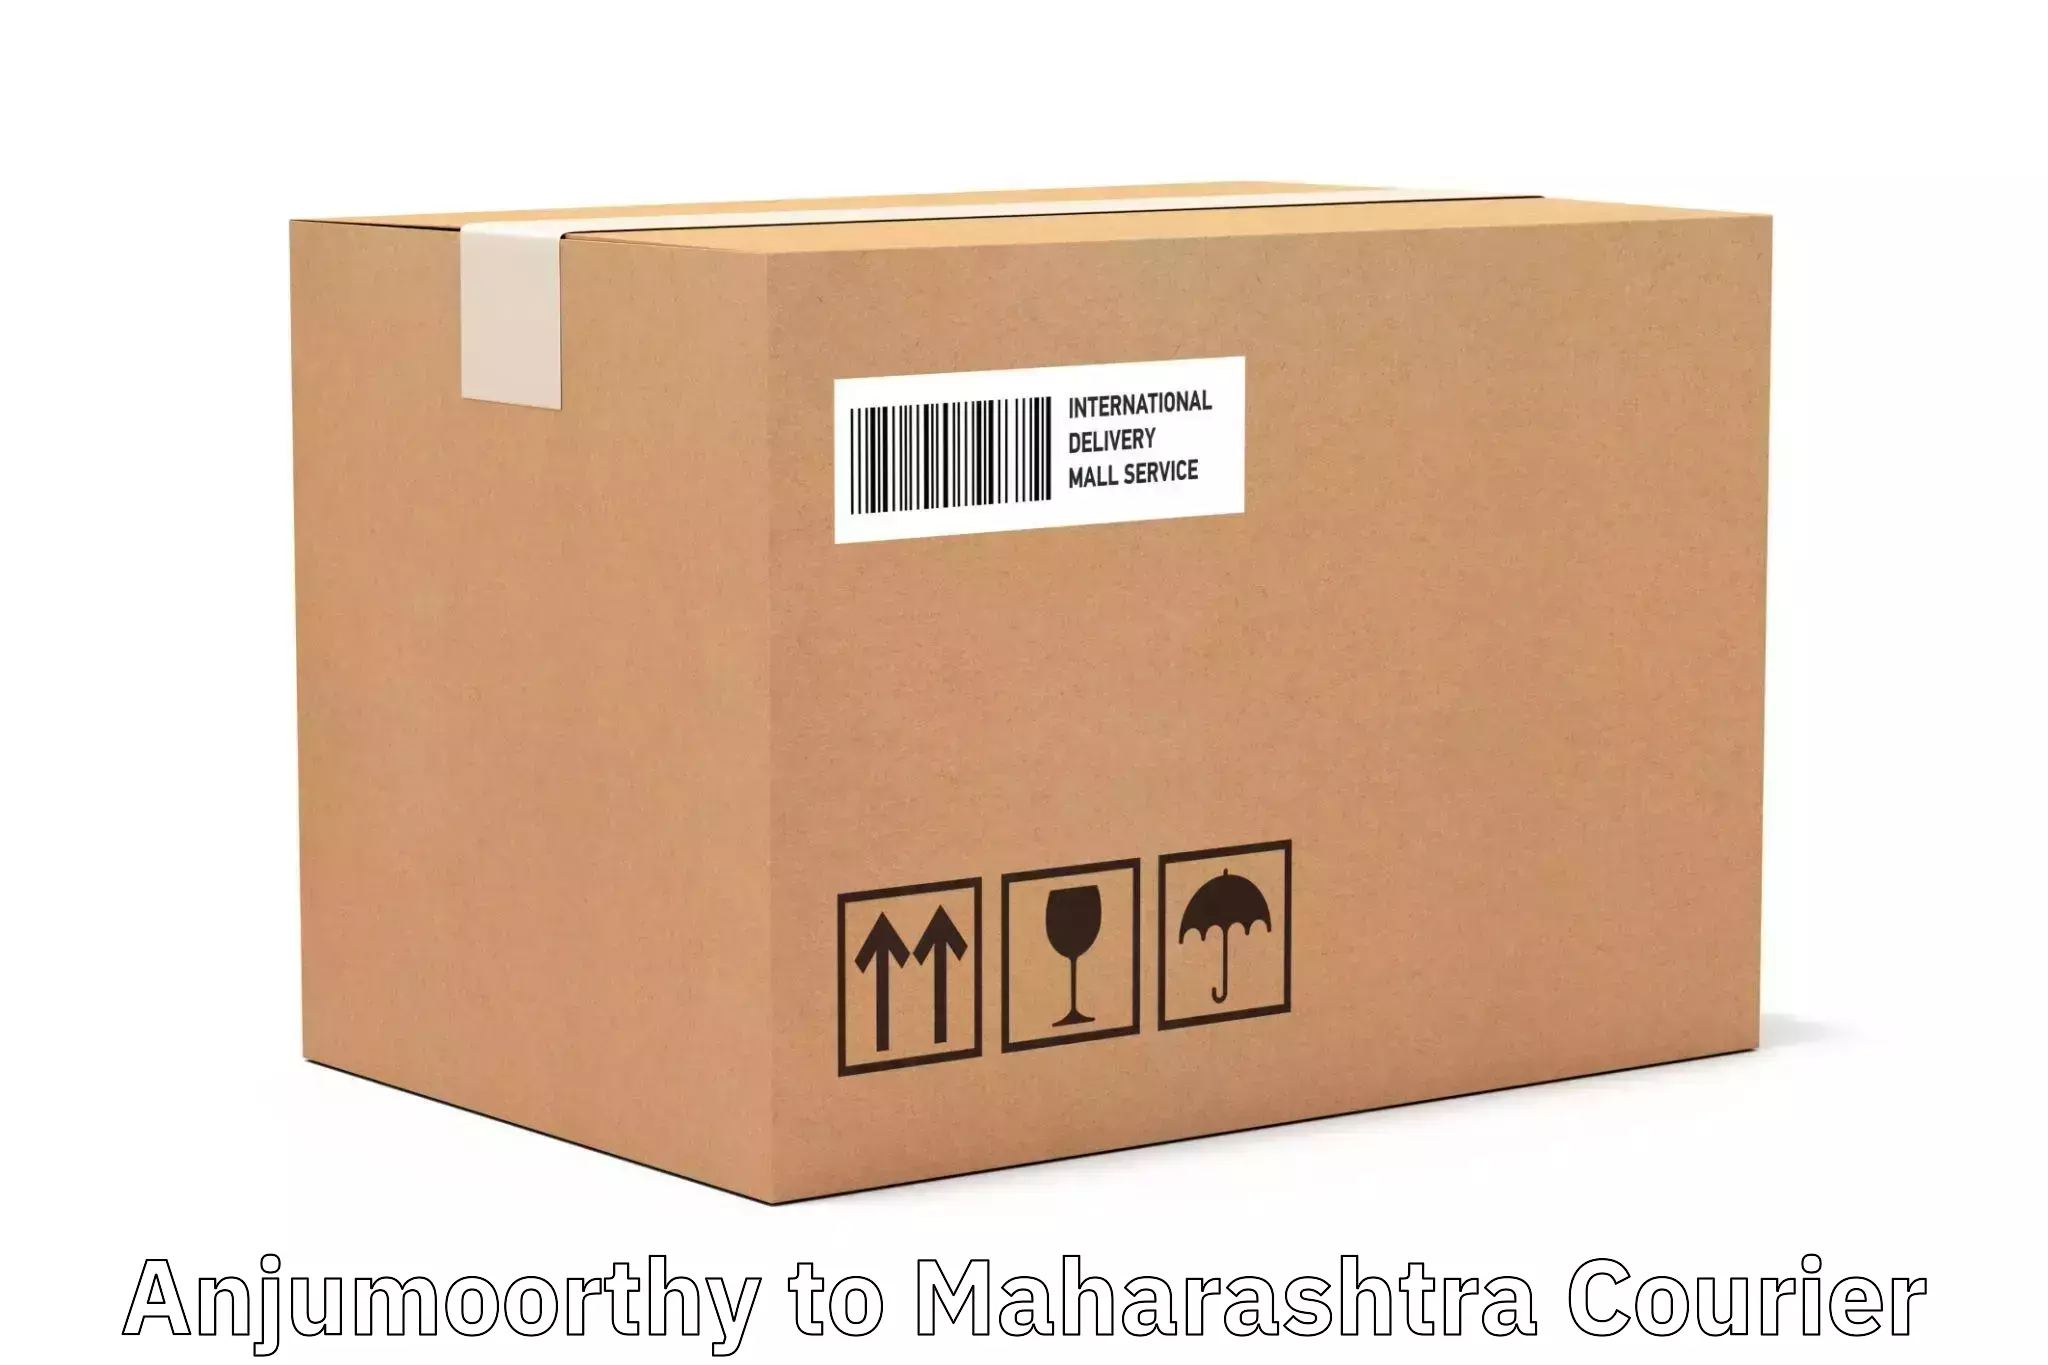 Customer-focused courier Anjumoorthy to Dharni Amravati